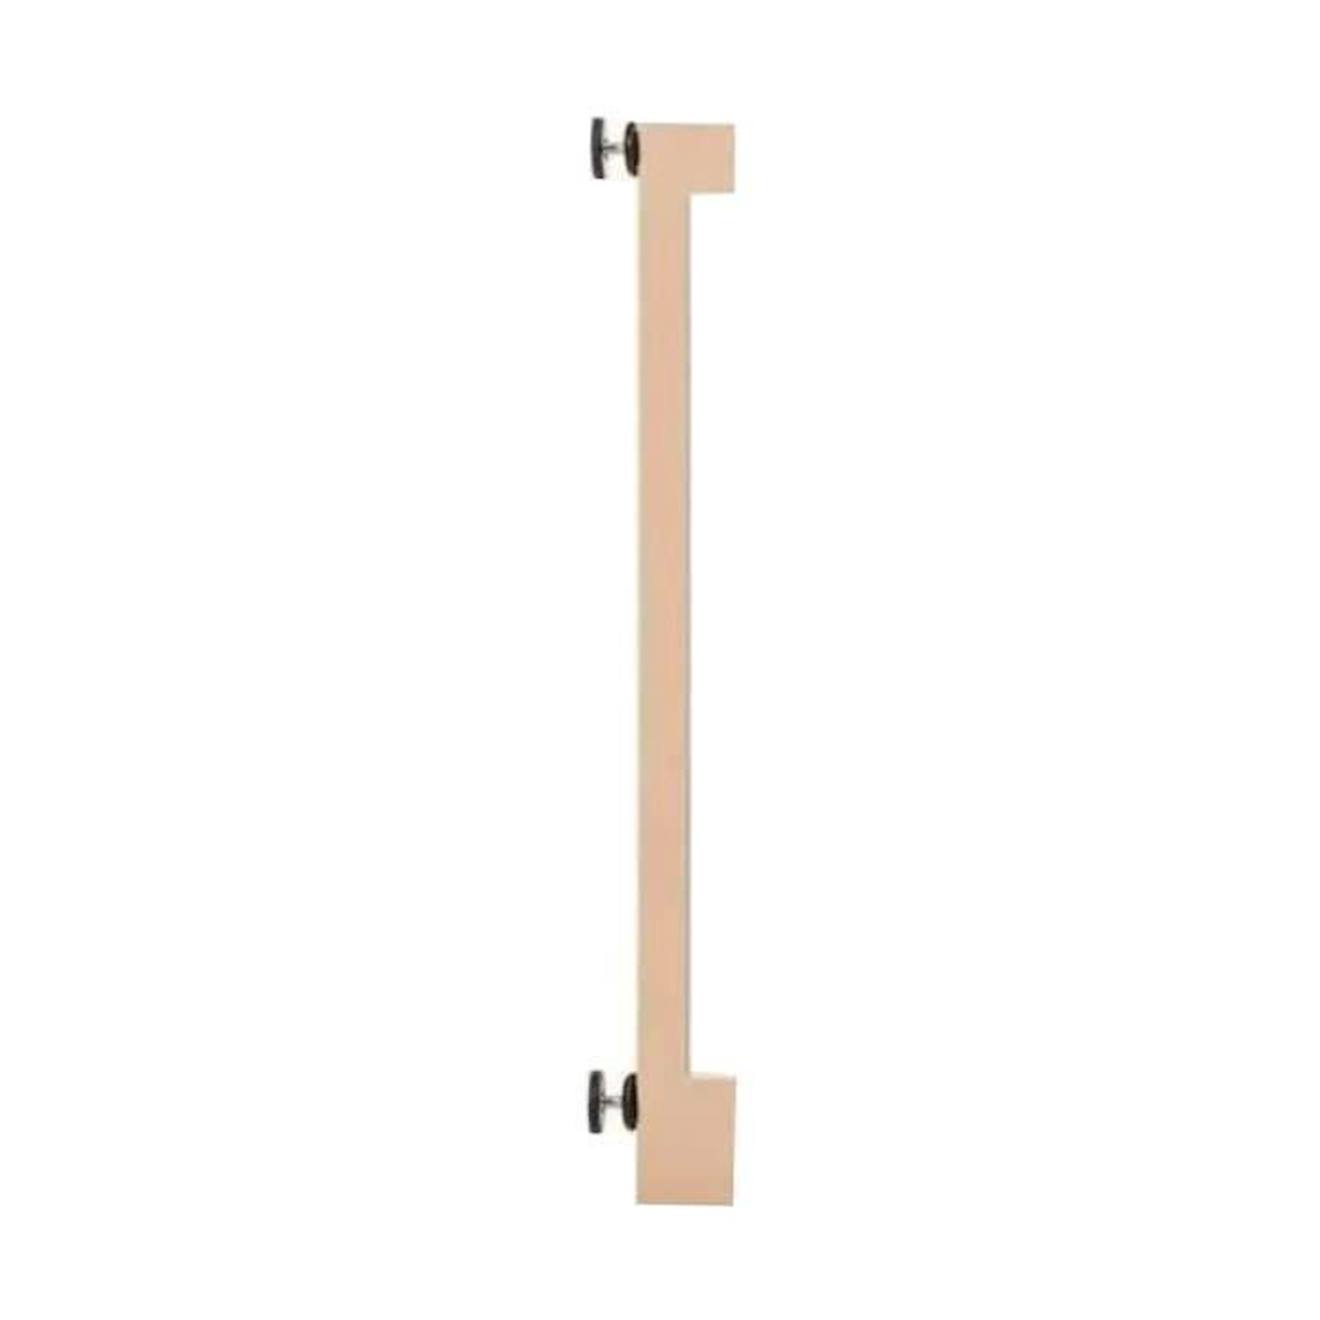 SAFETY 1ST Extension 7 cm pour Essential wooden gate, Barrière de sécurité  bois, De 6 à 24 mois marron - Safety 1st